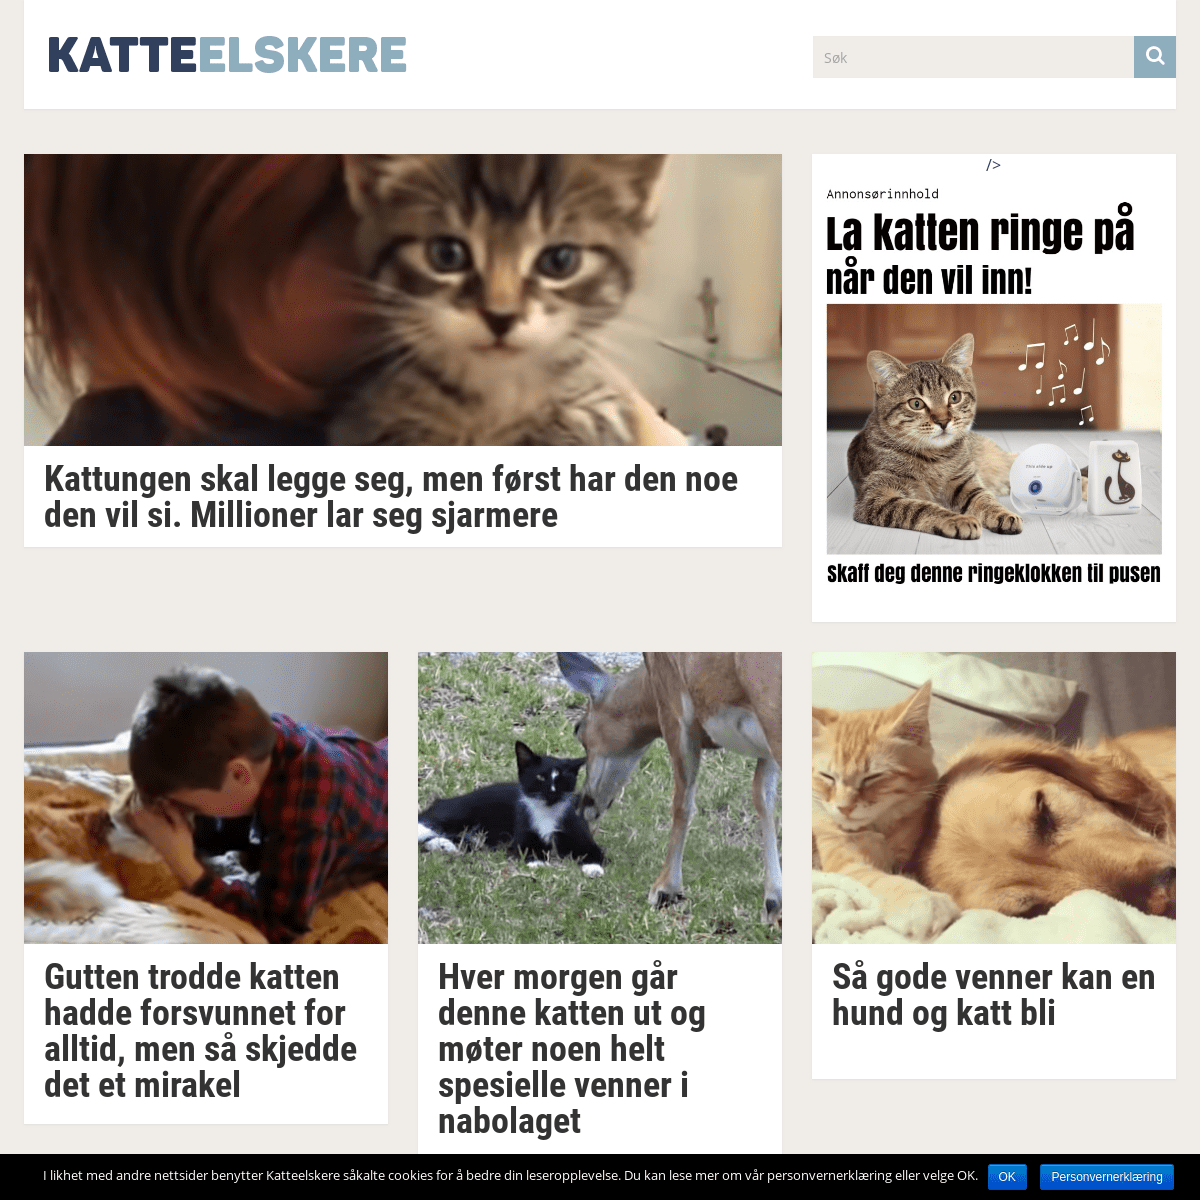 A complete backup of katteelskere.com